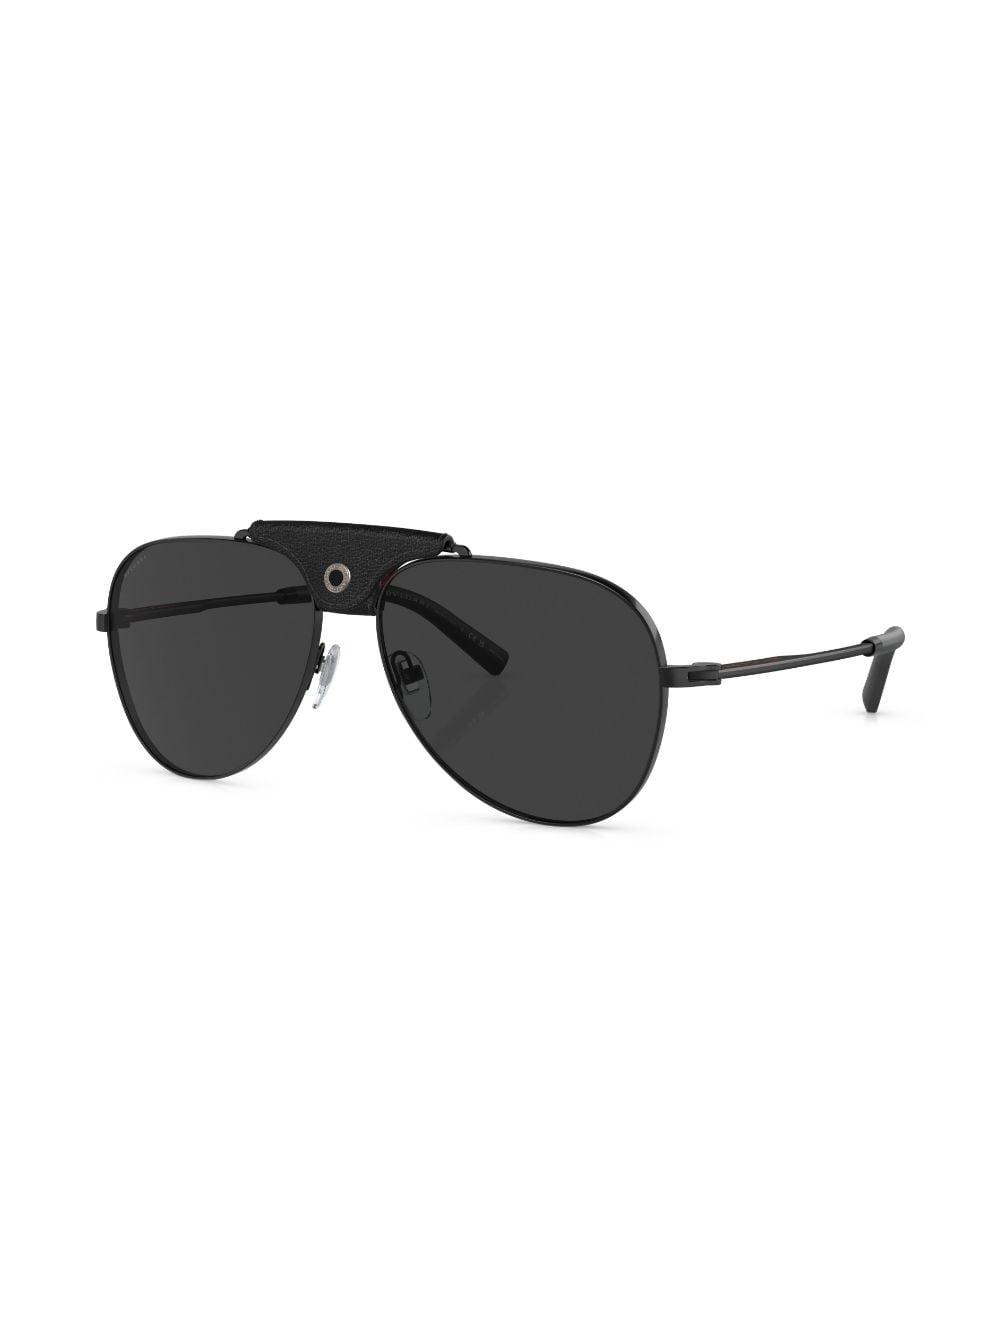 pilot-frame tinted-lenses sunglasses - 2